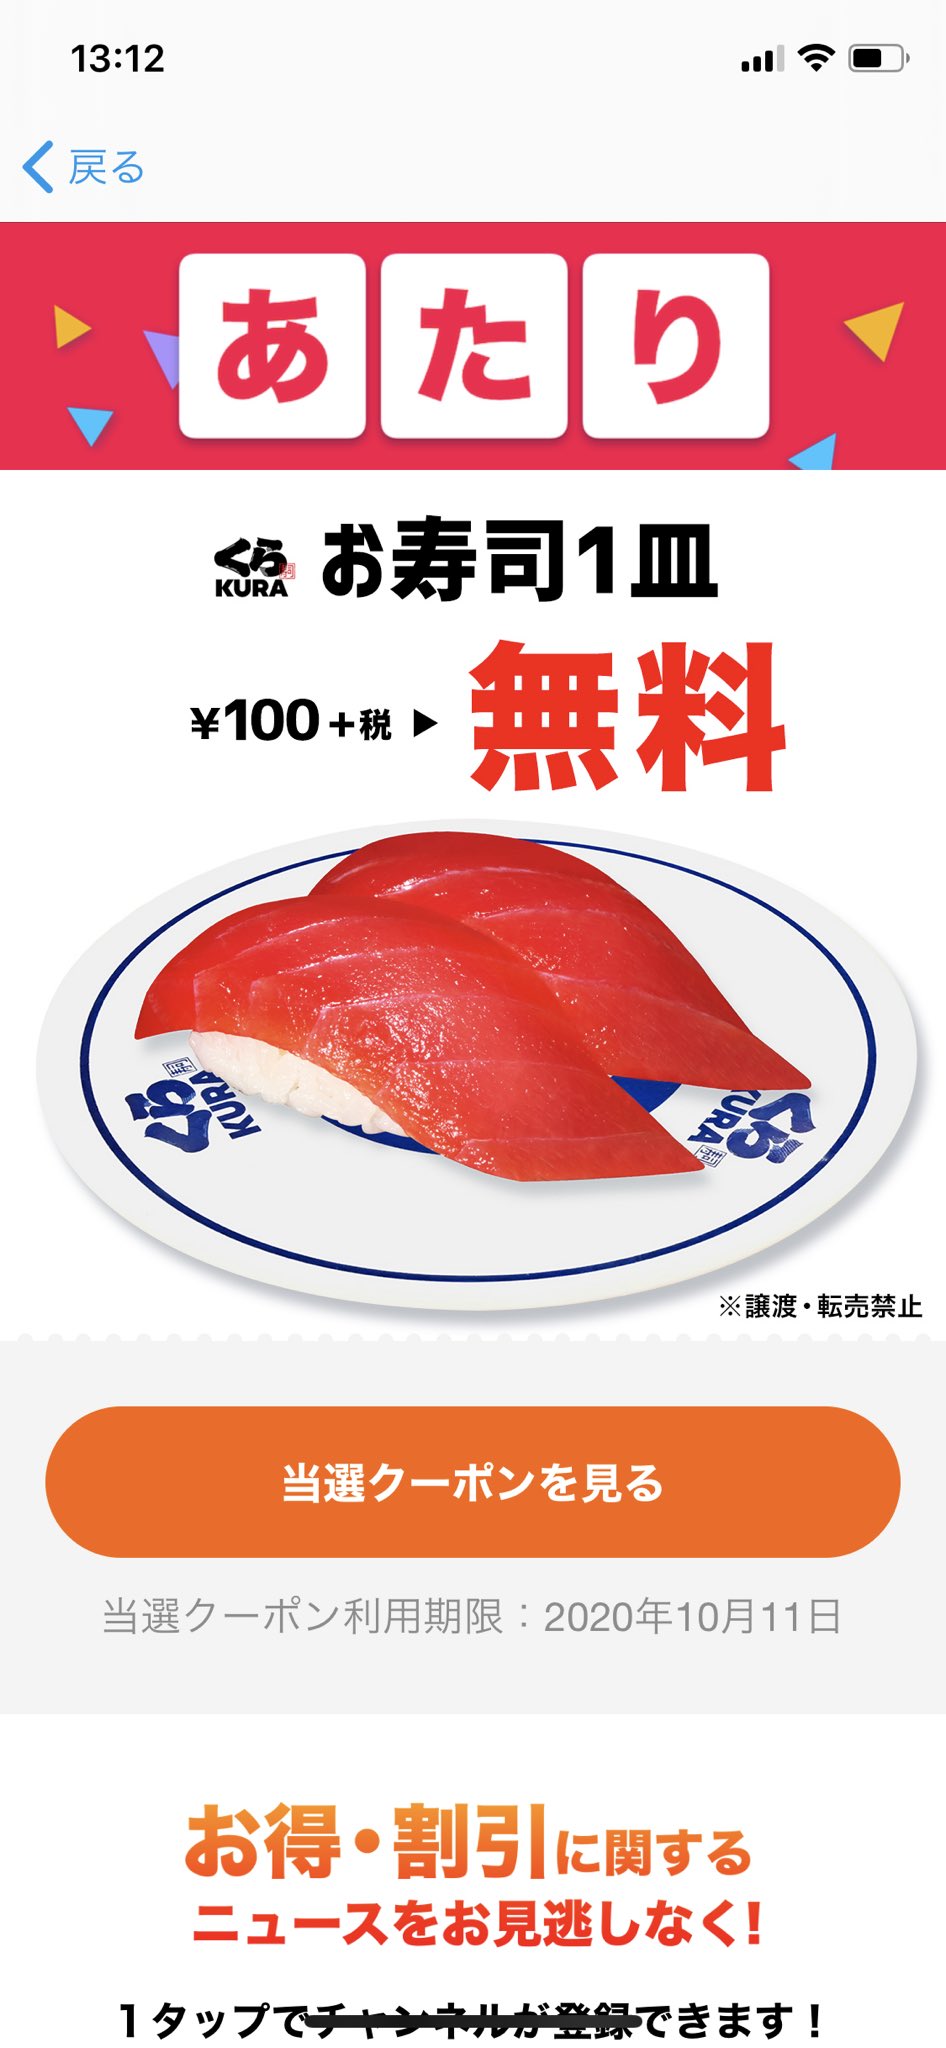 スマートニュース スマニュー限定 無料クーポン くら寿司 Mutenkurasushi の お寿司一皿 無料 が 抽選で50万名様に当たる 10 8まで毎日チャレンジ 今すぐダウンロード T Co M0bkhiqvod くら寿司 スマートニュース